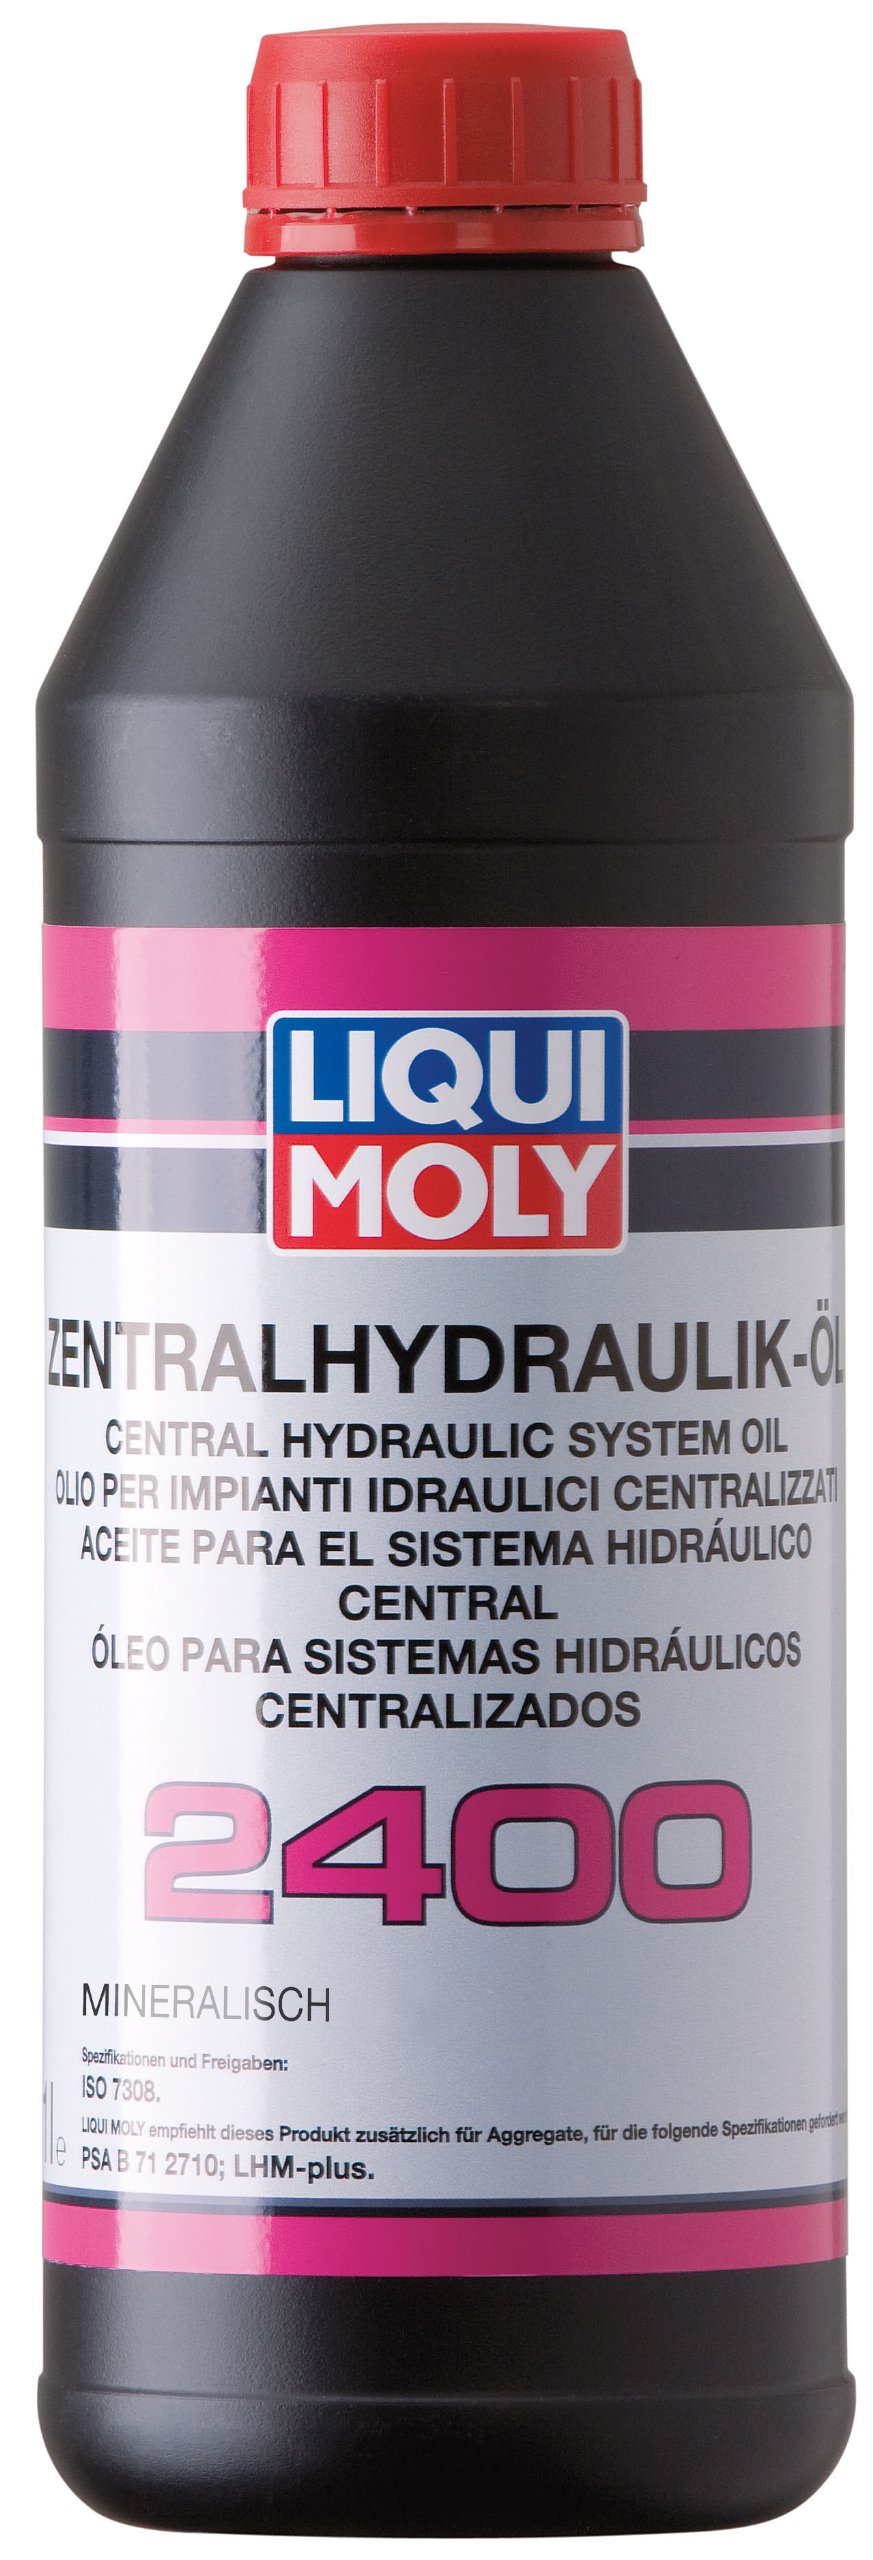 LIQUI MOLY 3666 Zentralhydraulik-Öl 2400 1 l von Liqui Moly